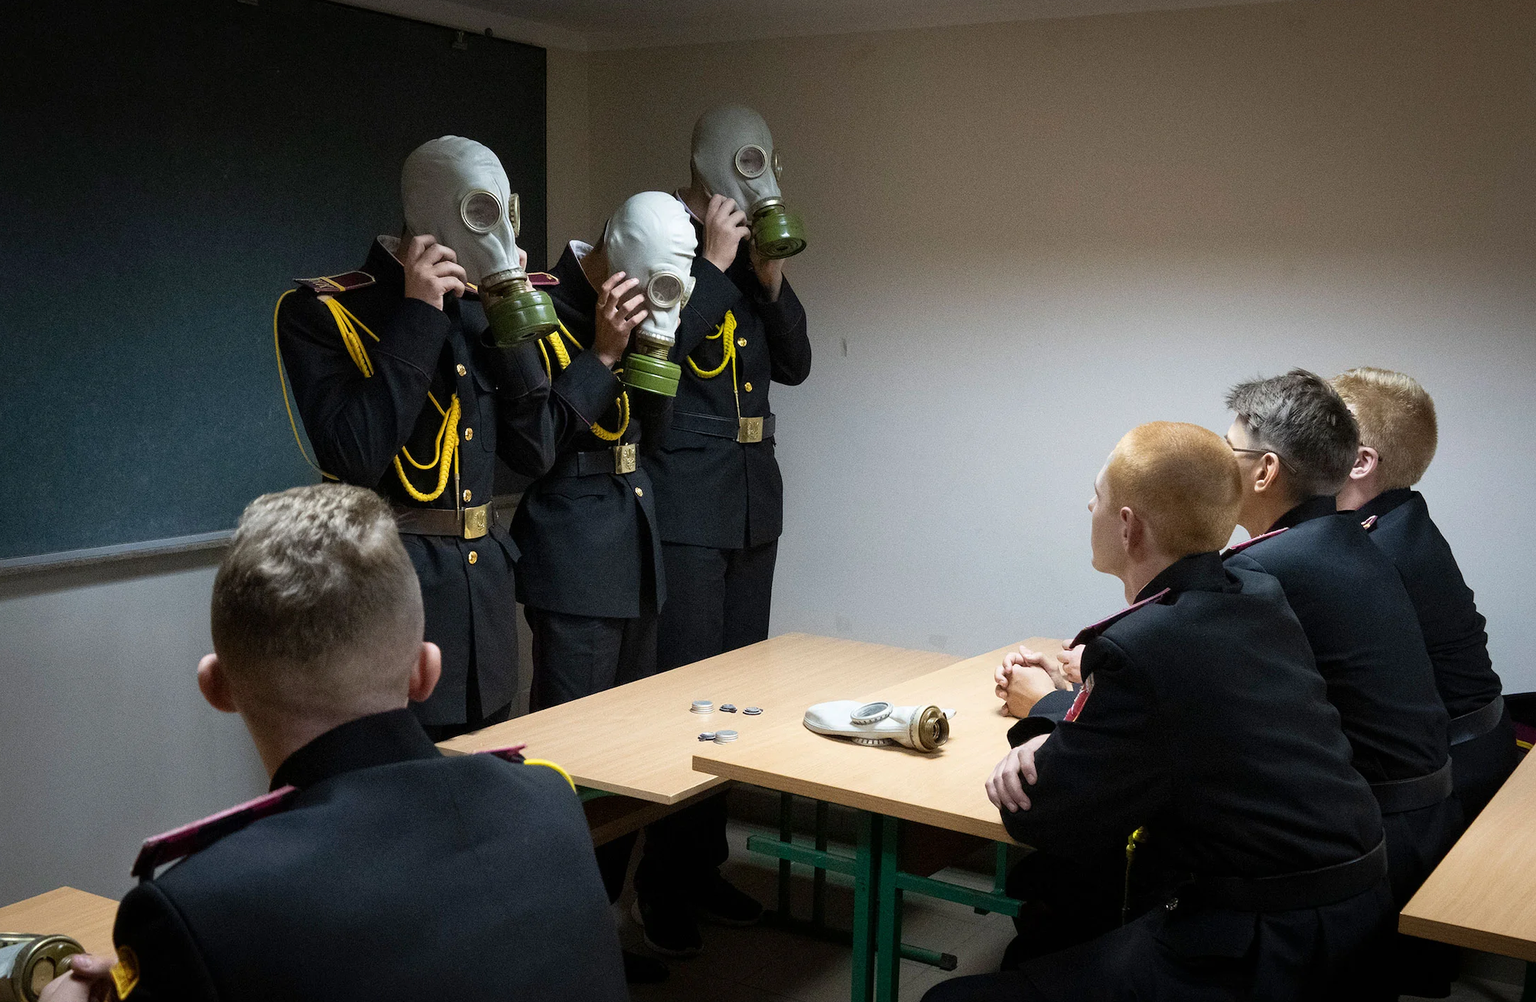 Des étudiants s'exercent à une situation d'urgence, dans un abri anti-aérien. C'est le premier jour d'école dans un lycée des cadets à Kiev en Ukraine, le 1er septembre.